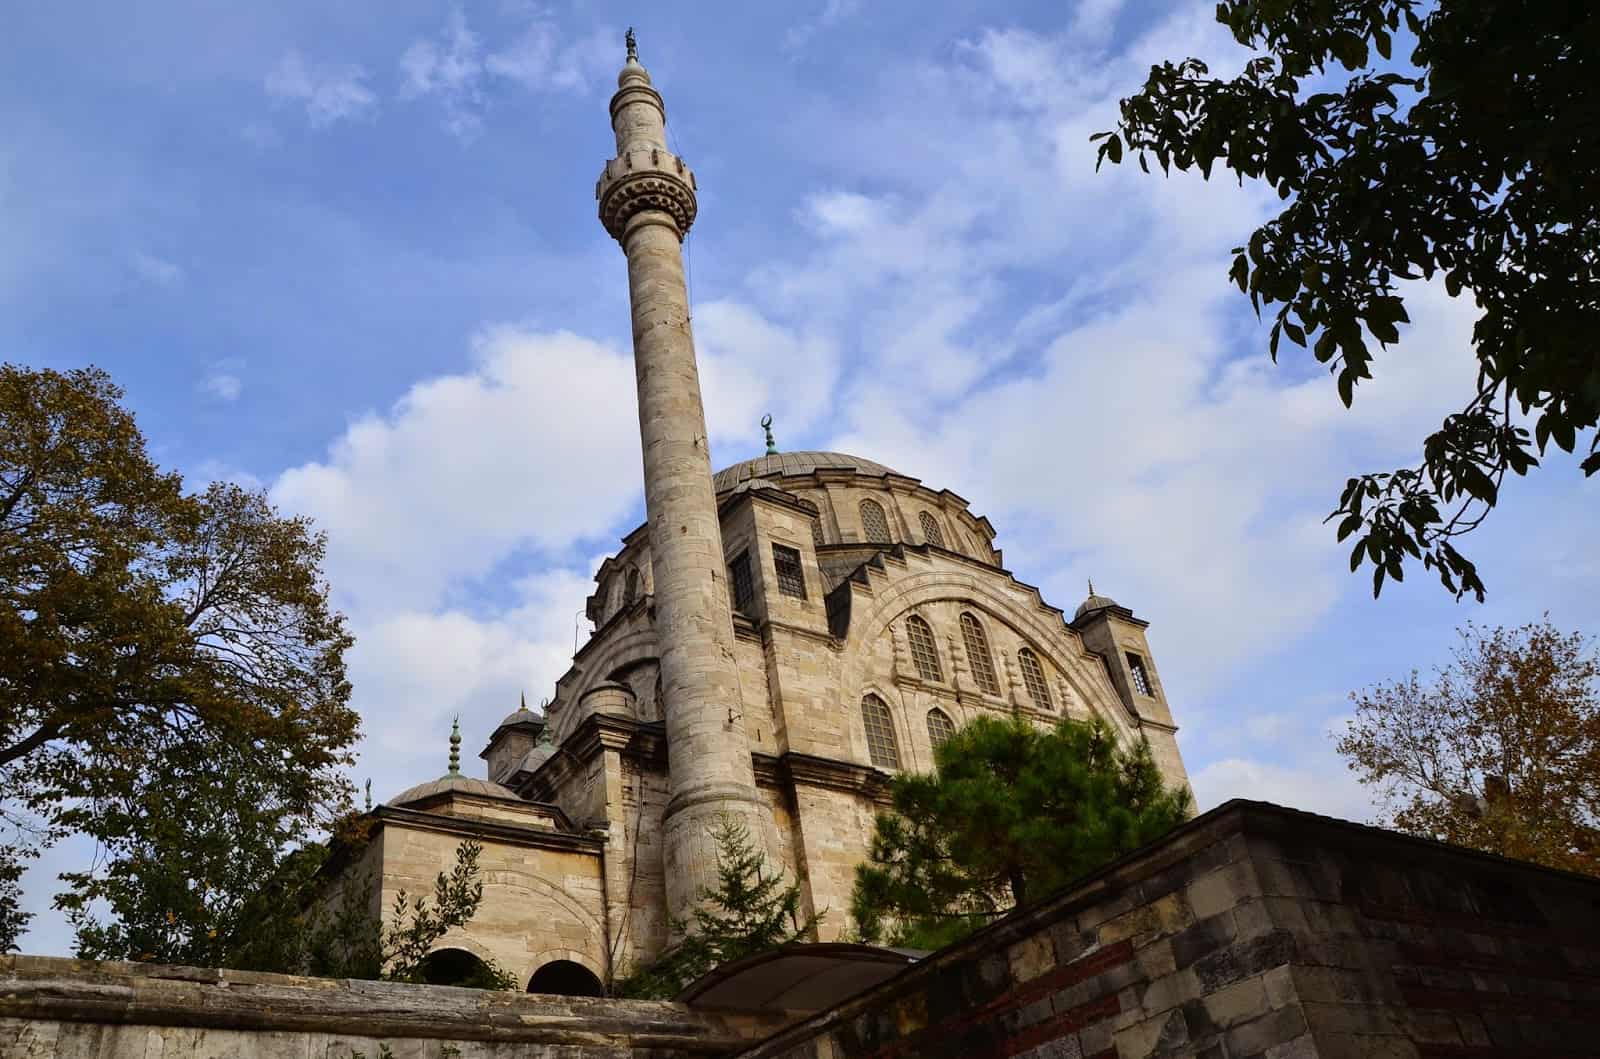 Ayazma Mosque in Üsküdar, Istanbul, Turkey